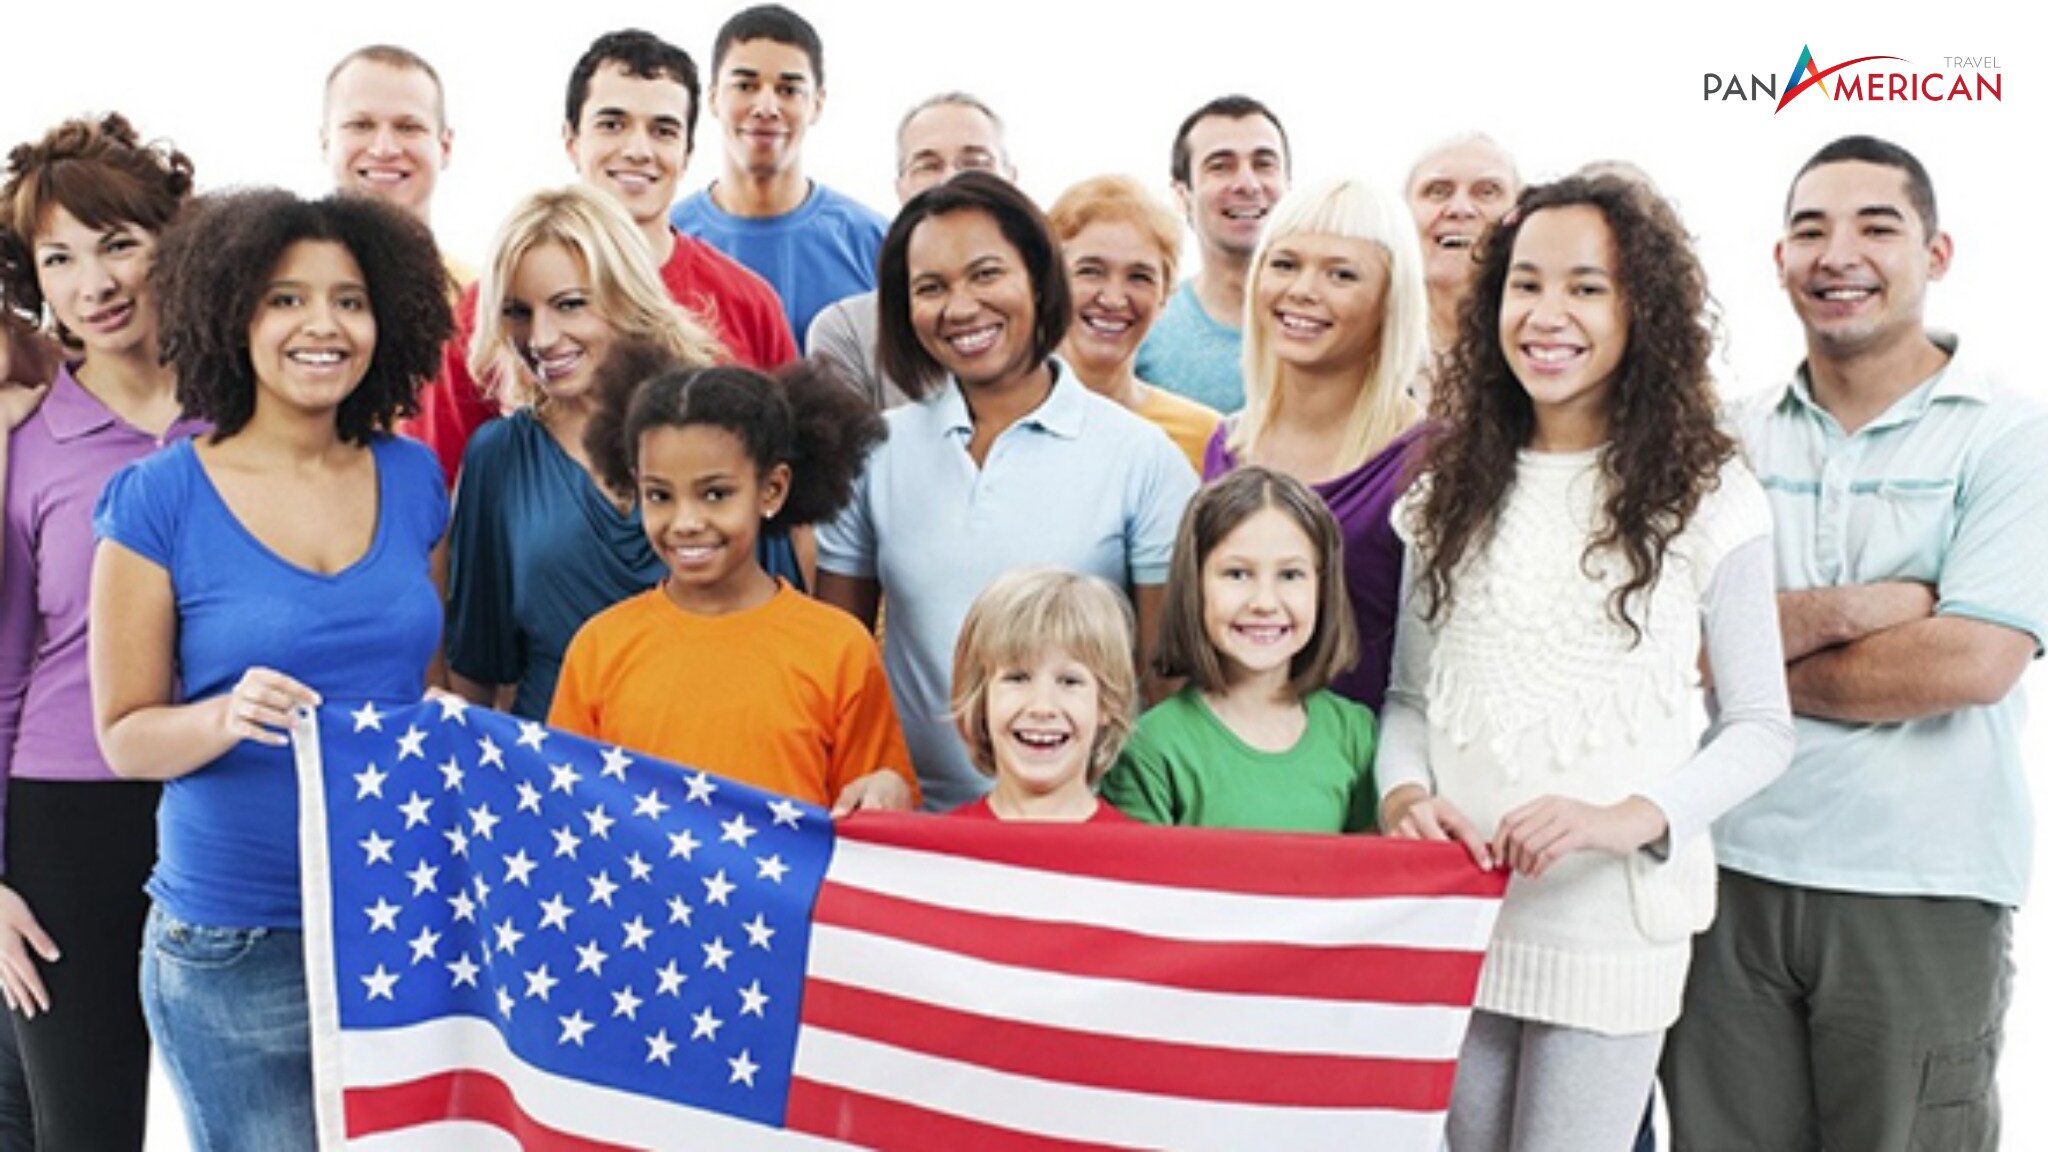 Hoa Kỳ là một quốc gia đa dân tộc